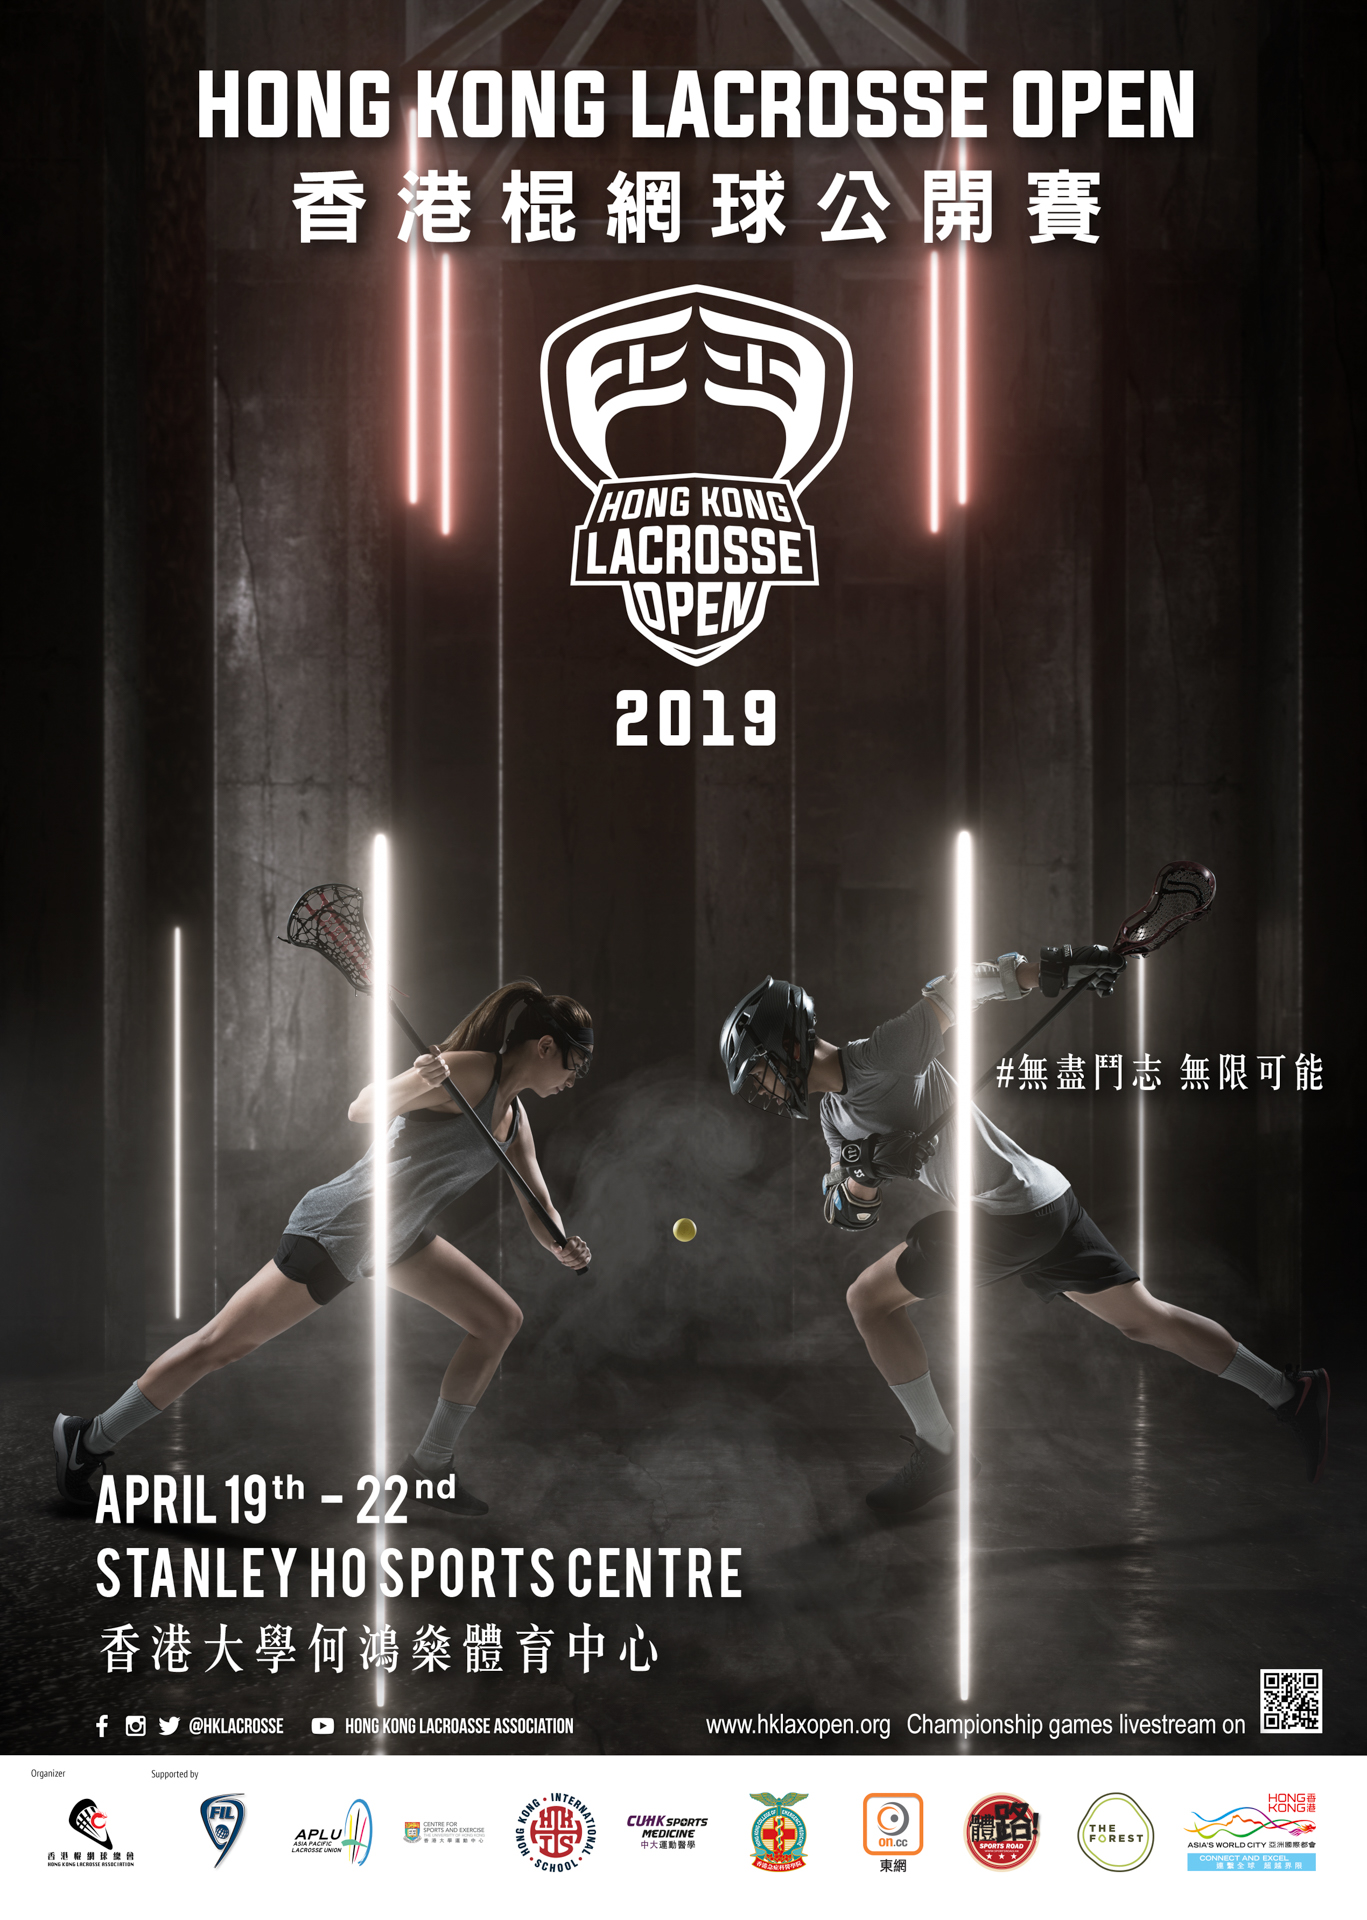 Hong Kong Lacrosse Open 2019